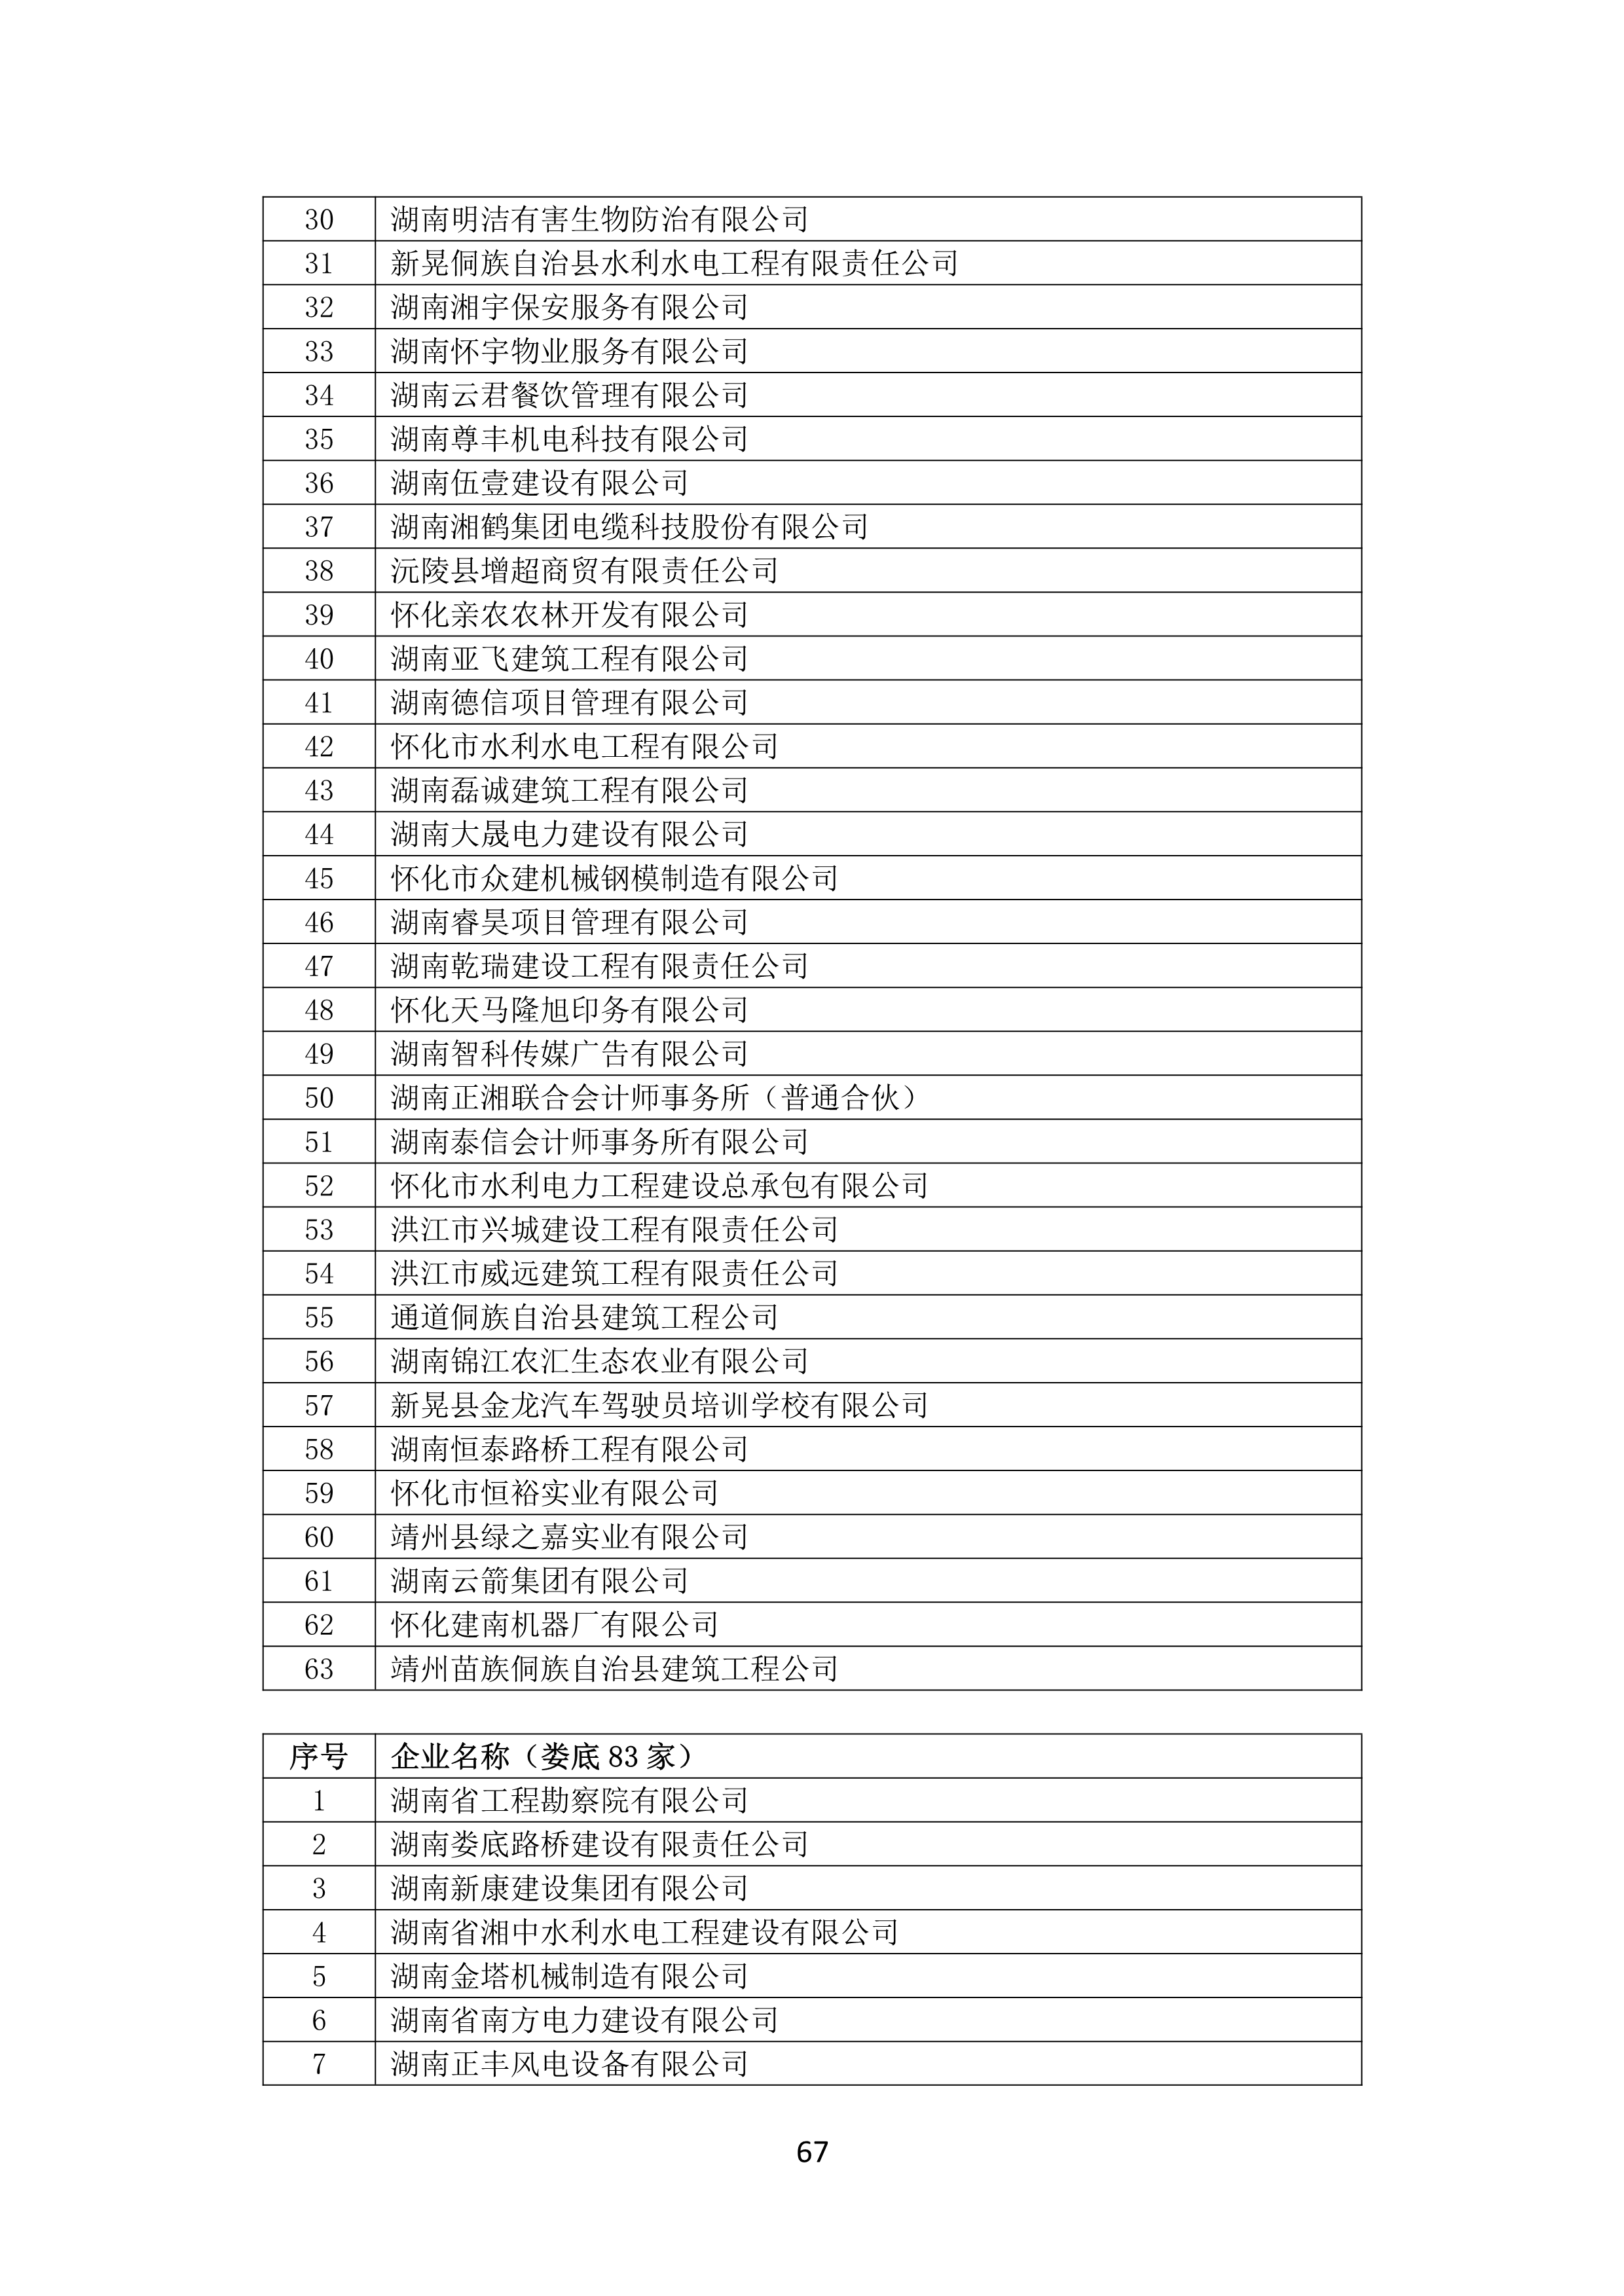 2021 年(nián)度湖南省守合同重信用企業名單_68.png